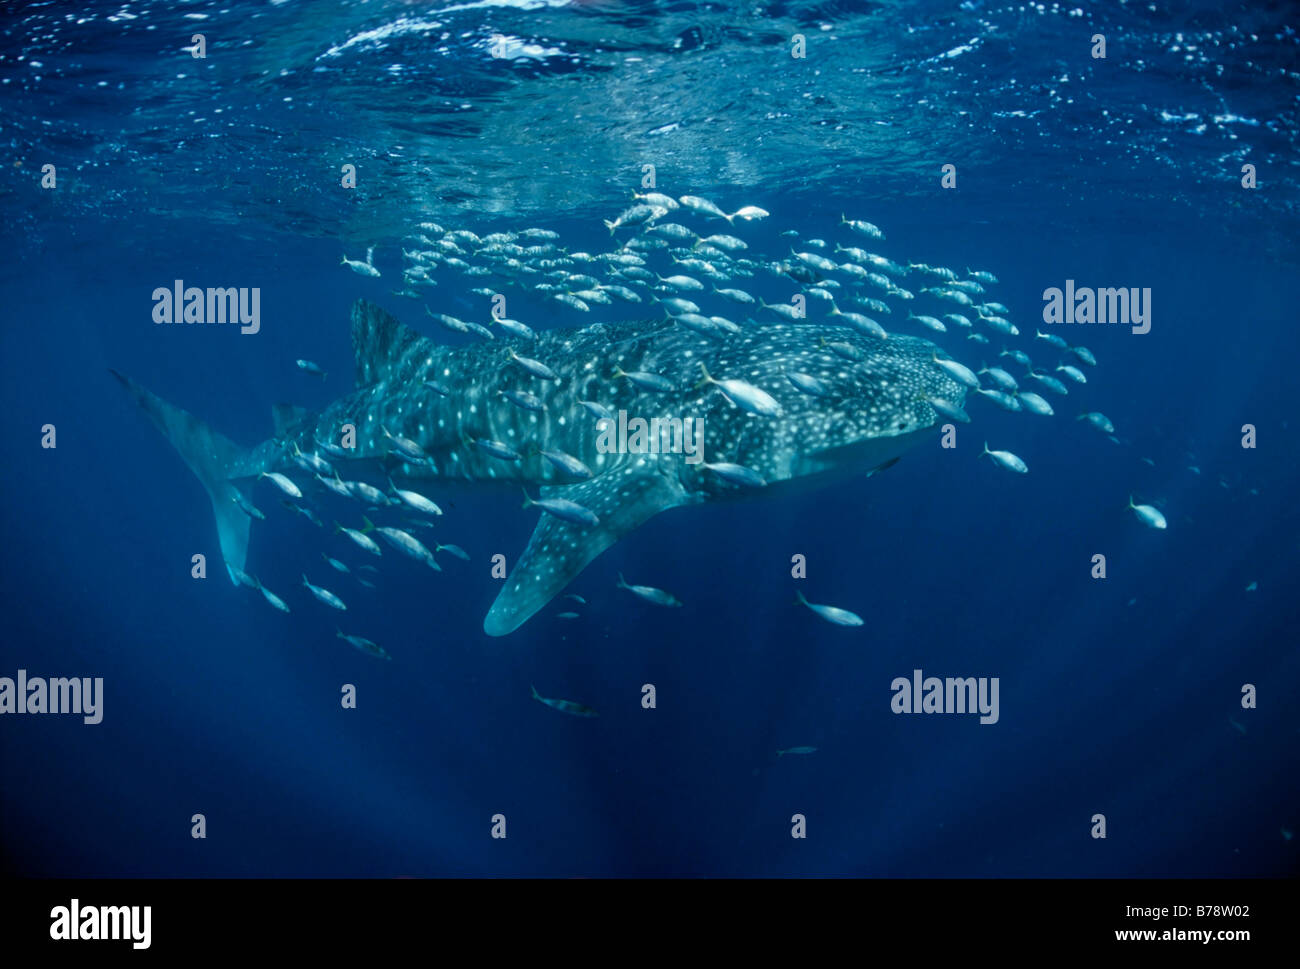 Tiburón ballena (Rhincodon typus) nadando por debajo de la superficie del mar, Ari Atoll, Maldivas, Océano Índico, Asia Foto de stock